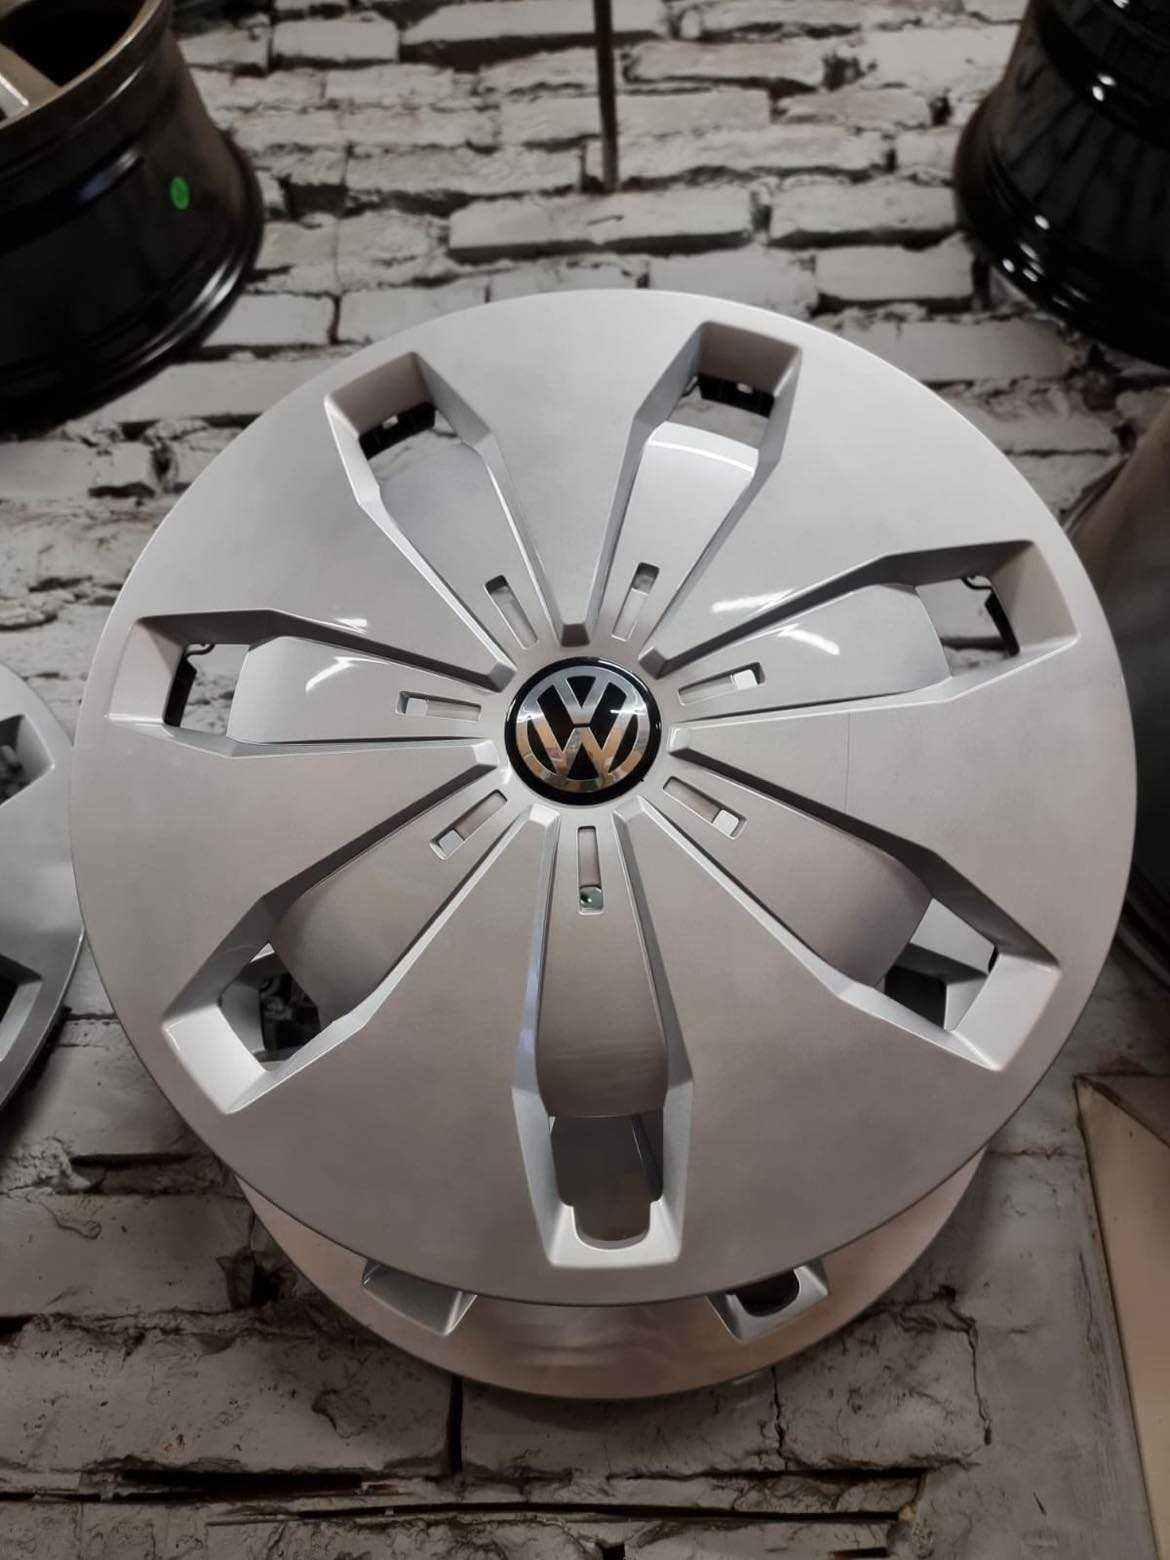 Ковпаки Оригінальні R16 VW Volkswagen 4шт ЯК НОВІ Без Дефектів